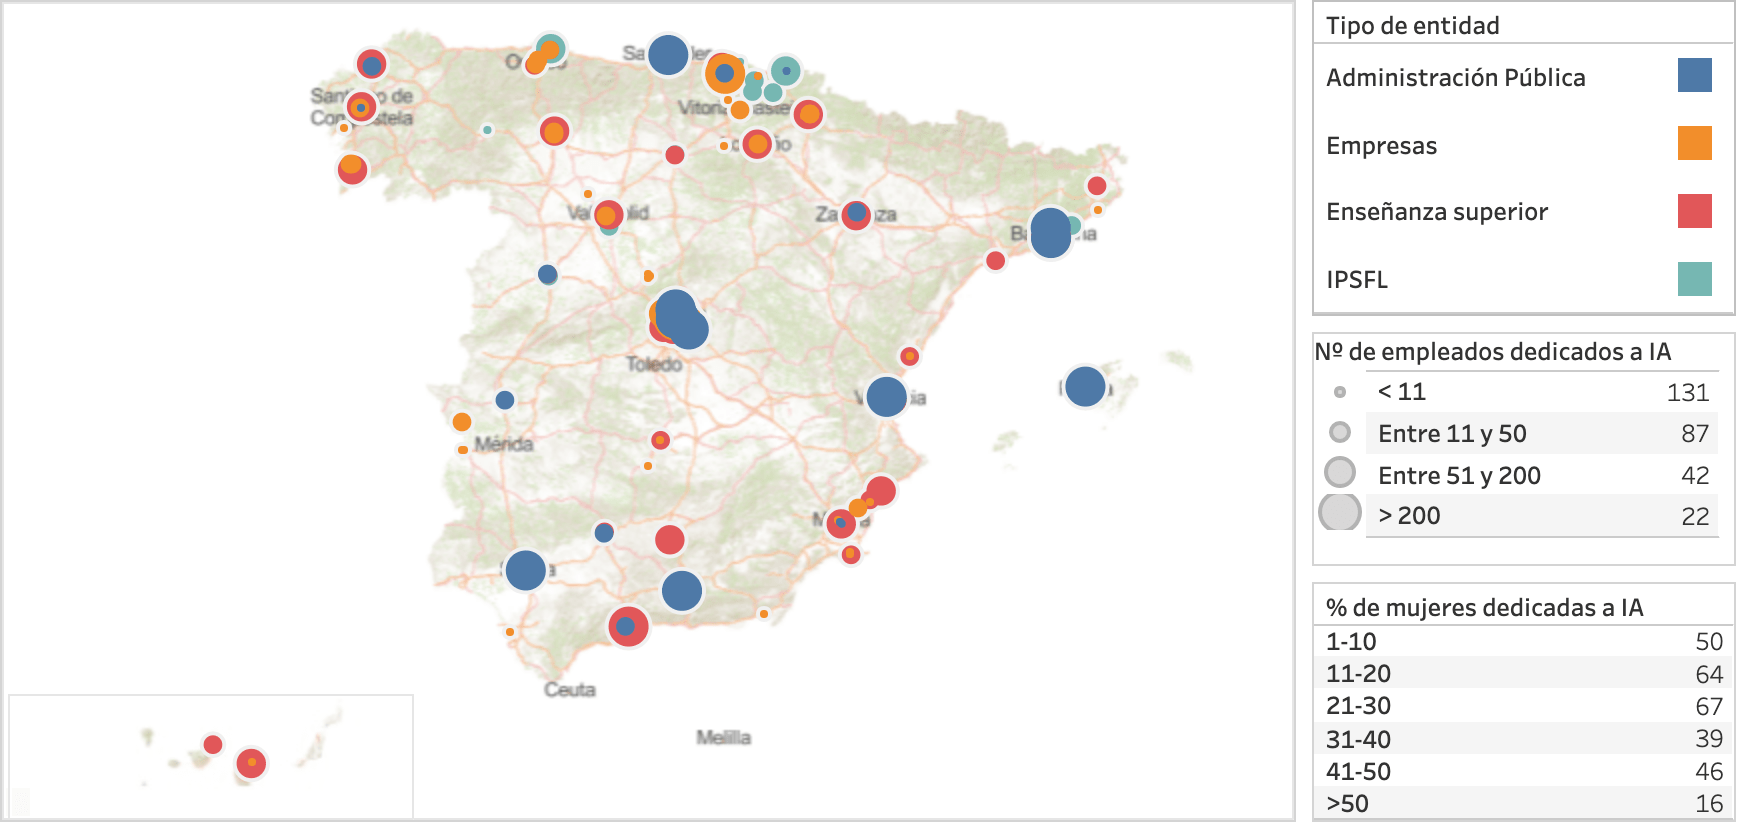 El mapa de la IA en España